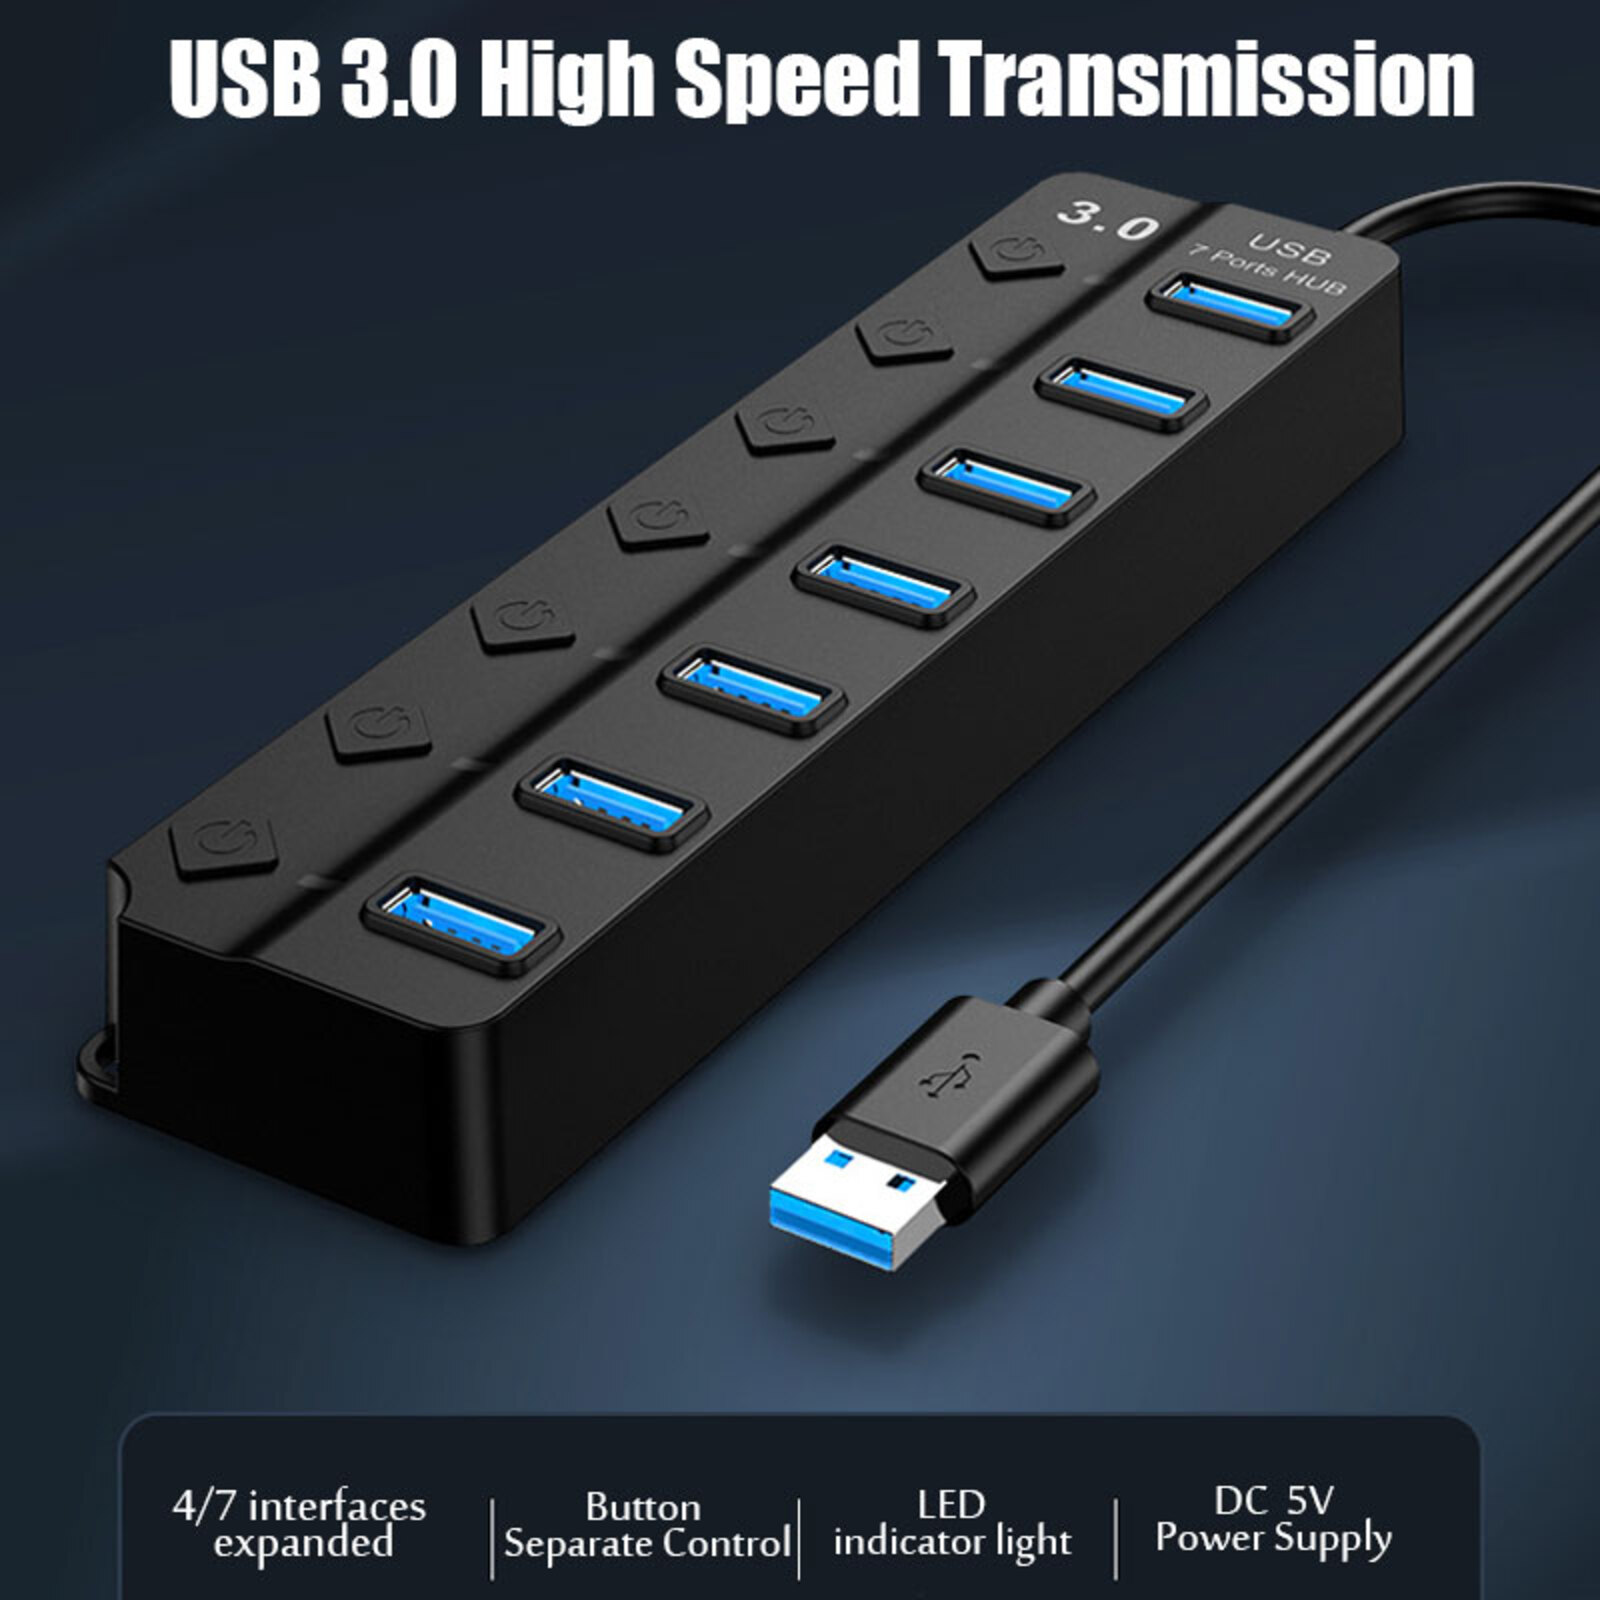 Plug Adaptateur Electrique Multisupport Multiprise Charge Rapide 2 USB 1 USB -C